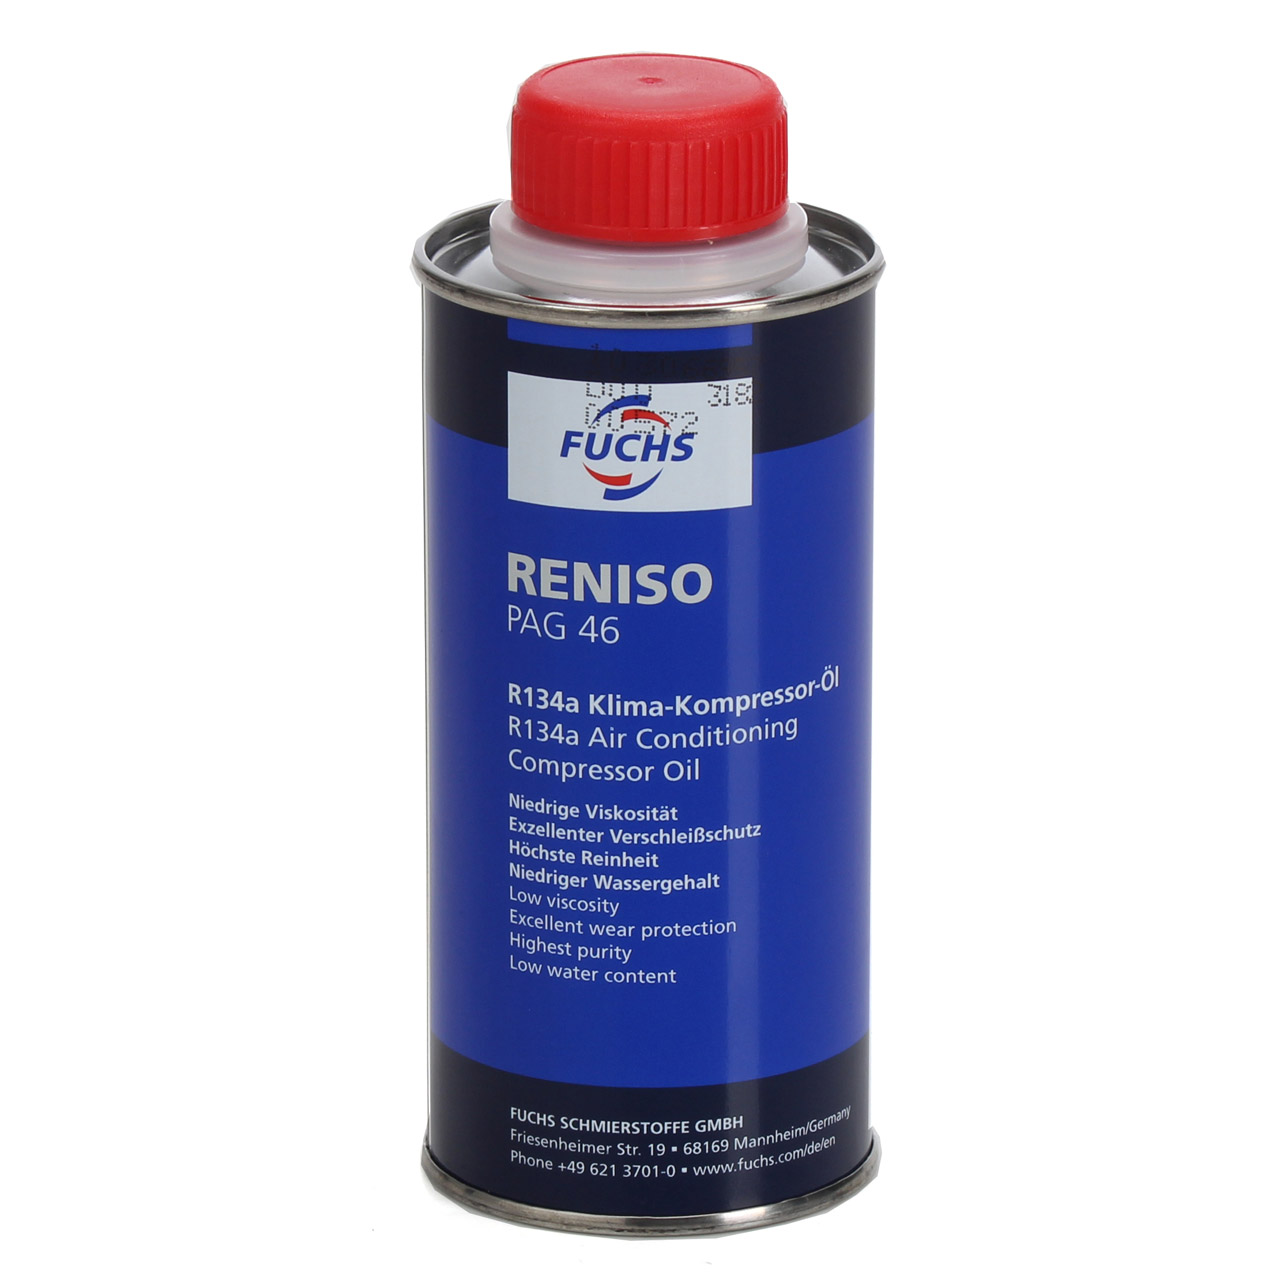 FUCHS RENISO PAG 46 R134a Kompressor Öl Kompressoröl Klimaanlagenöl 250ml